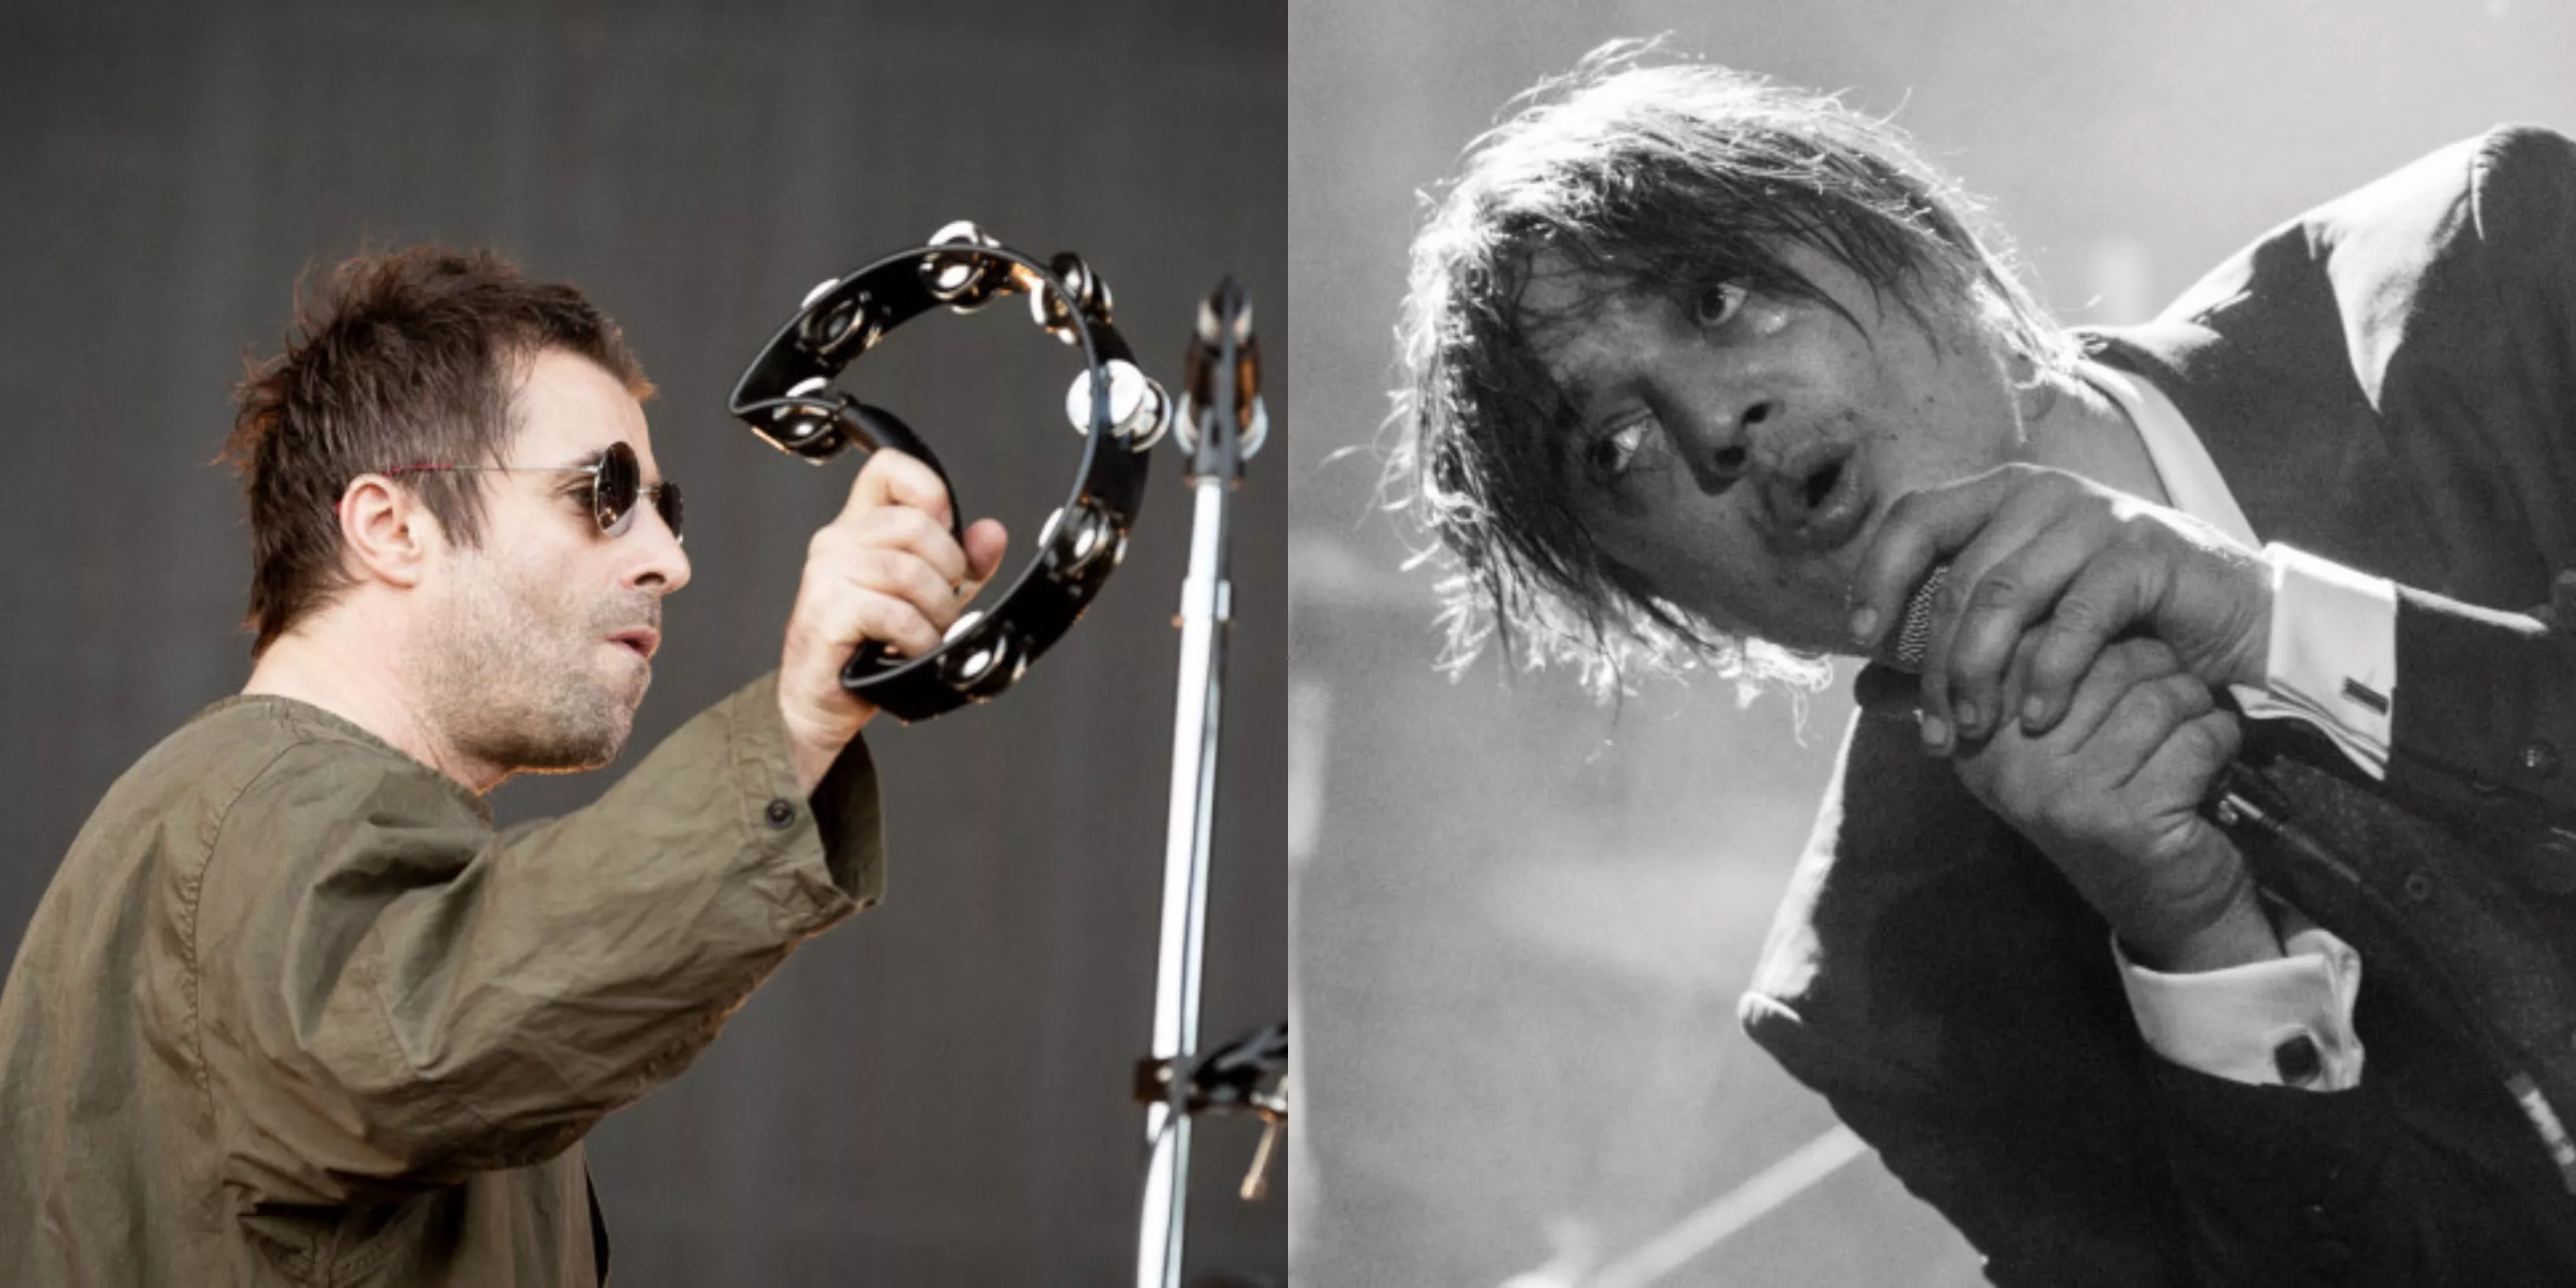 Pete Doherty utmanar Liam Gallagher på en boxningsmatch: "Han behöver en smäll"